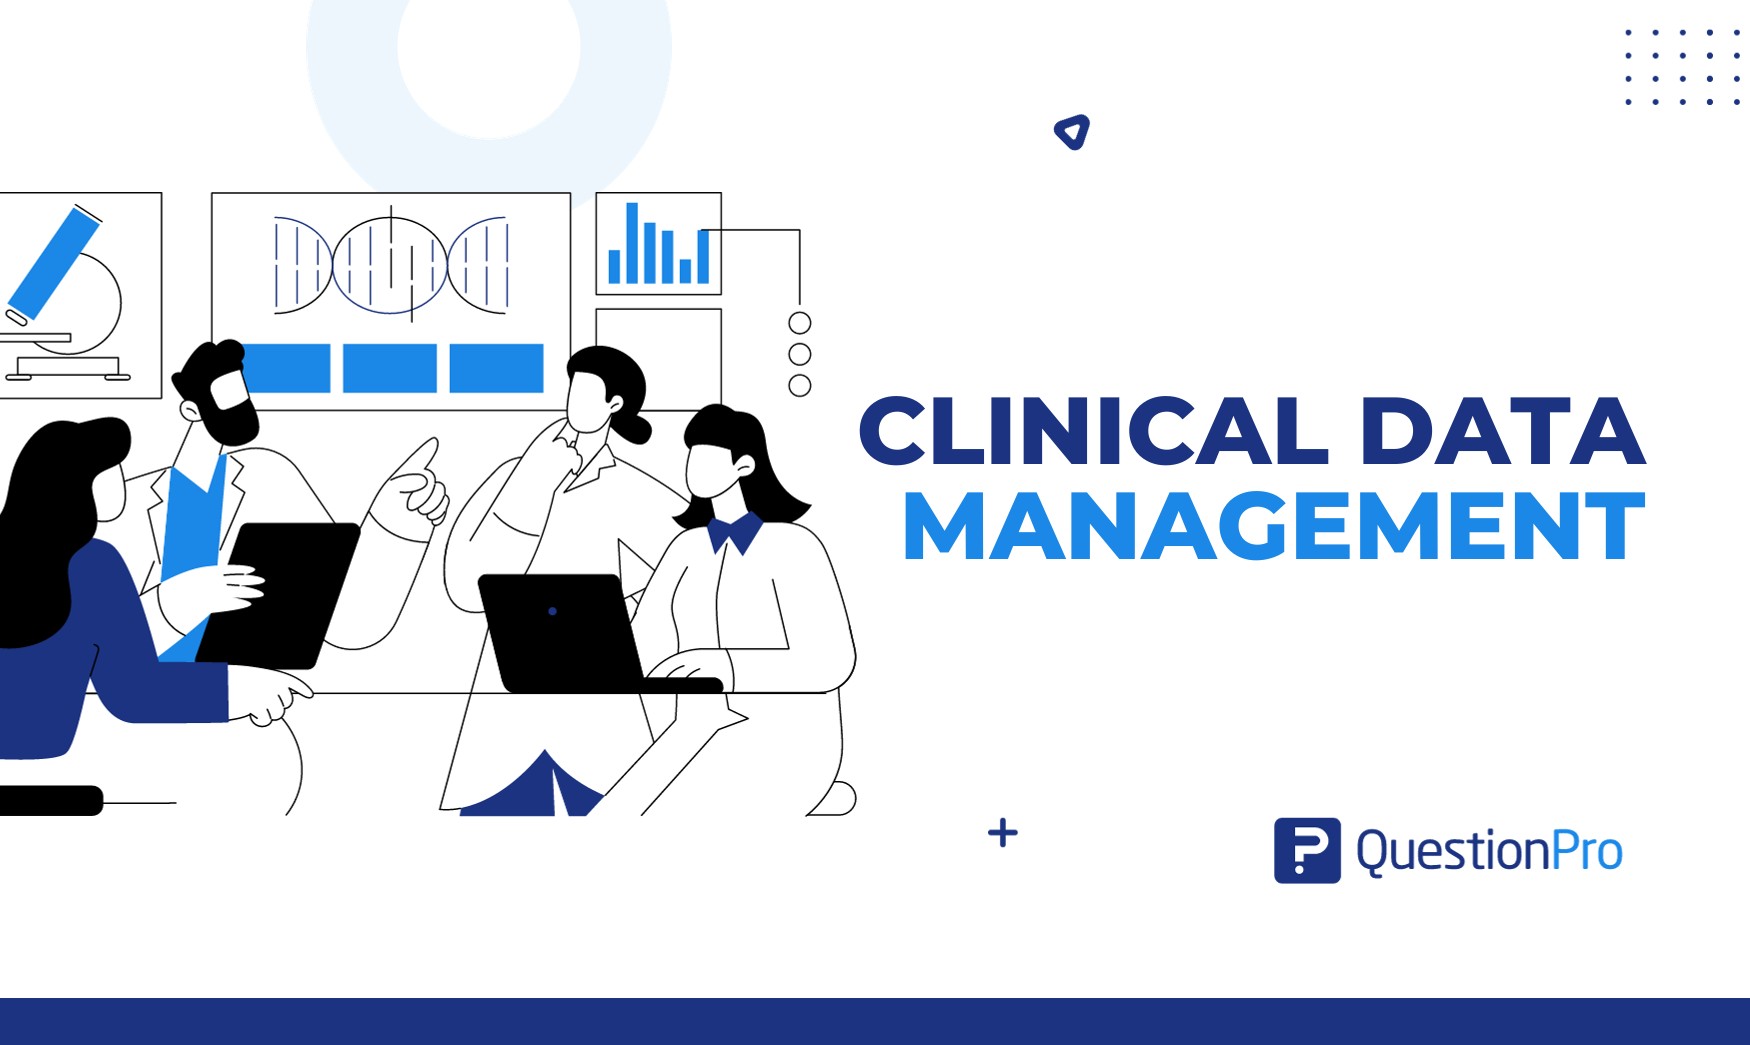 Clinical Data management